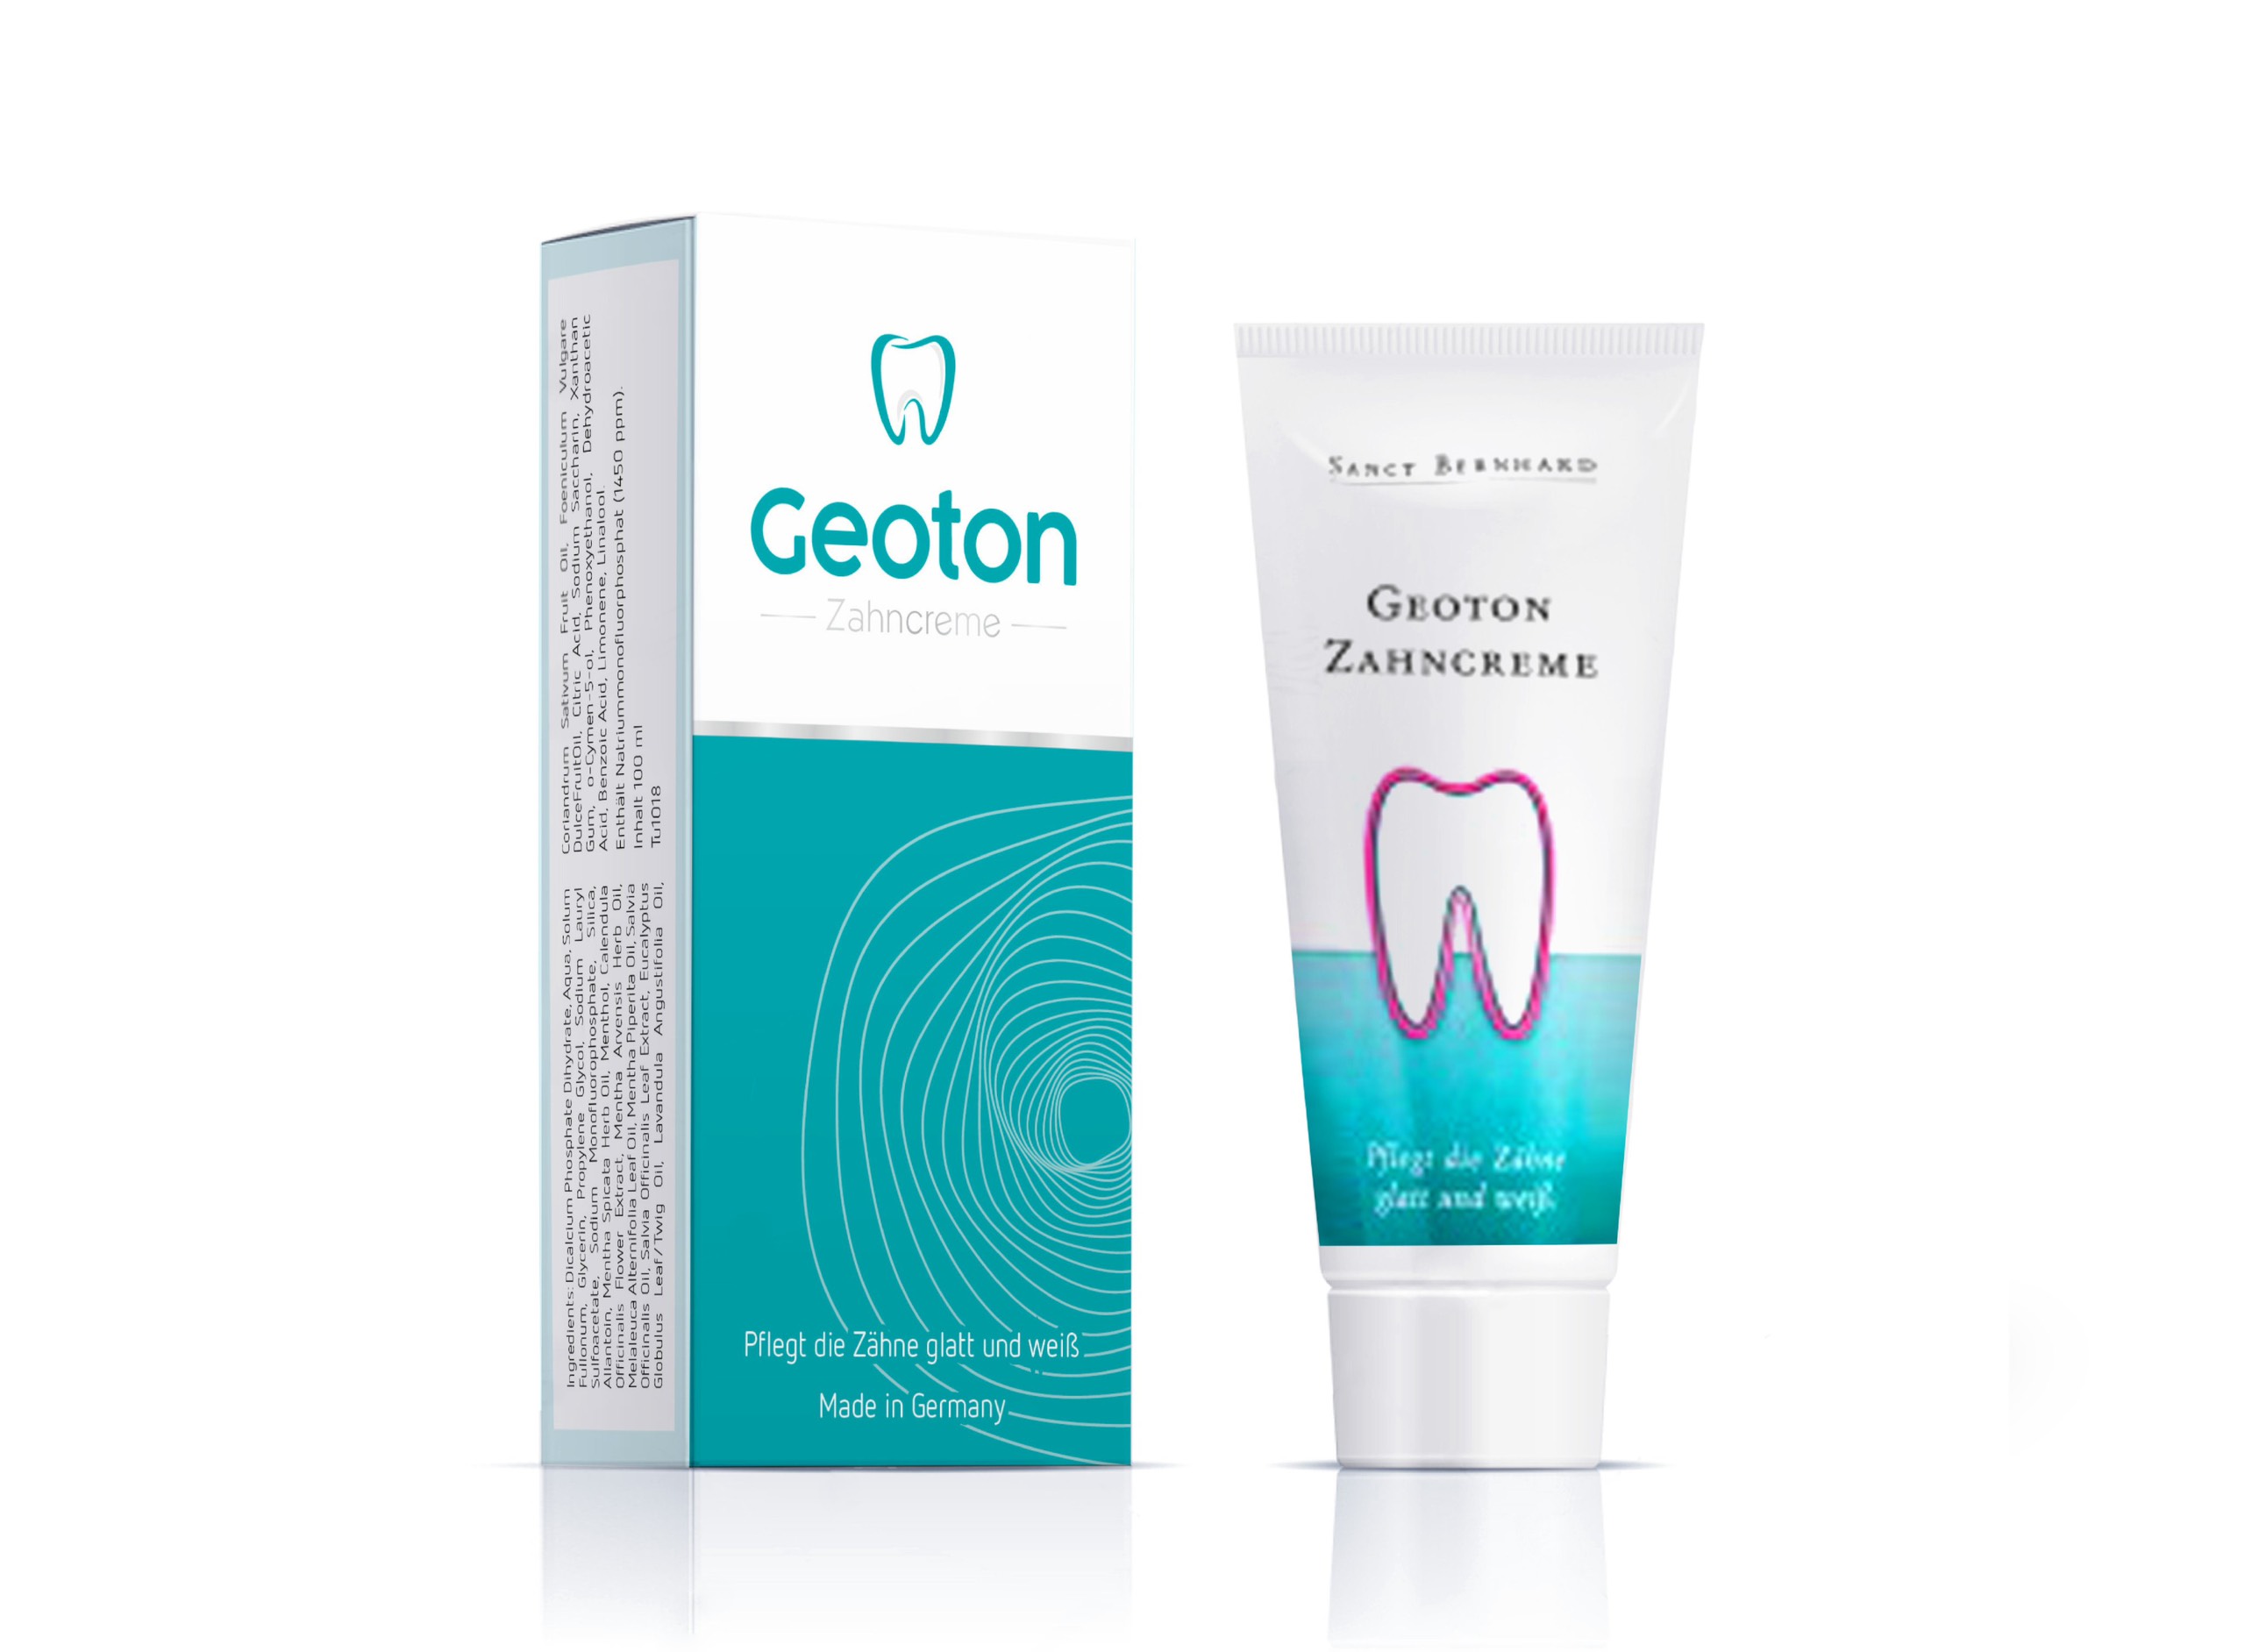 Kem đánh răng Geoton Zahncreme giúp phòng và chống viêm lợi, kháng khuẩn, chống hôi miệng, làm cho răng chắc khỏe và trắng sáng hơn